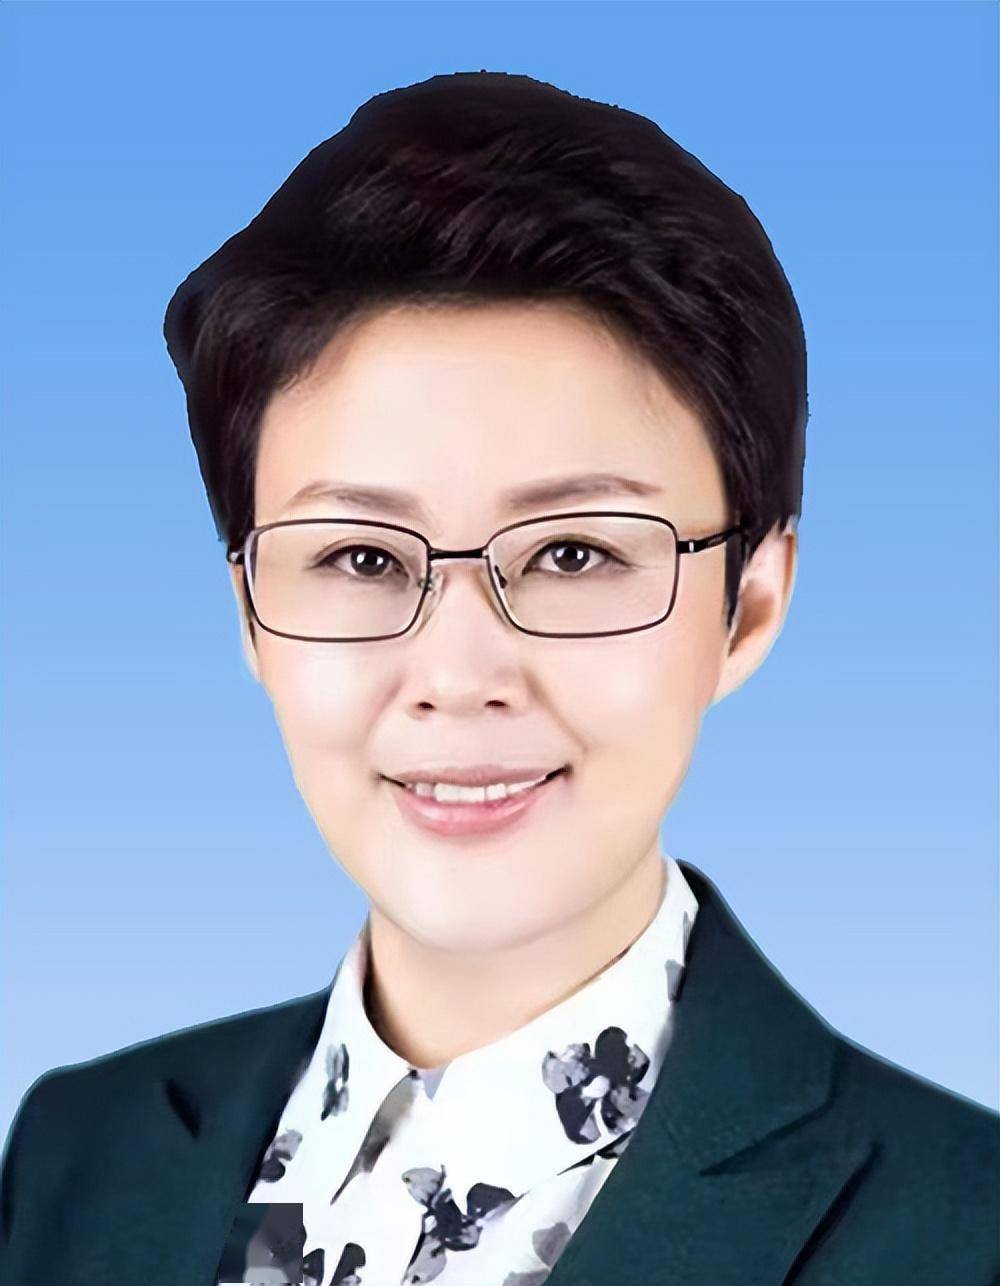 经济学博士的她,当选山东省副省长